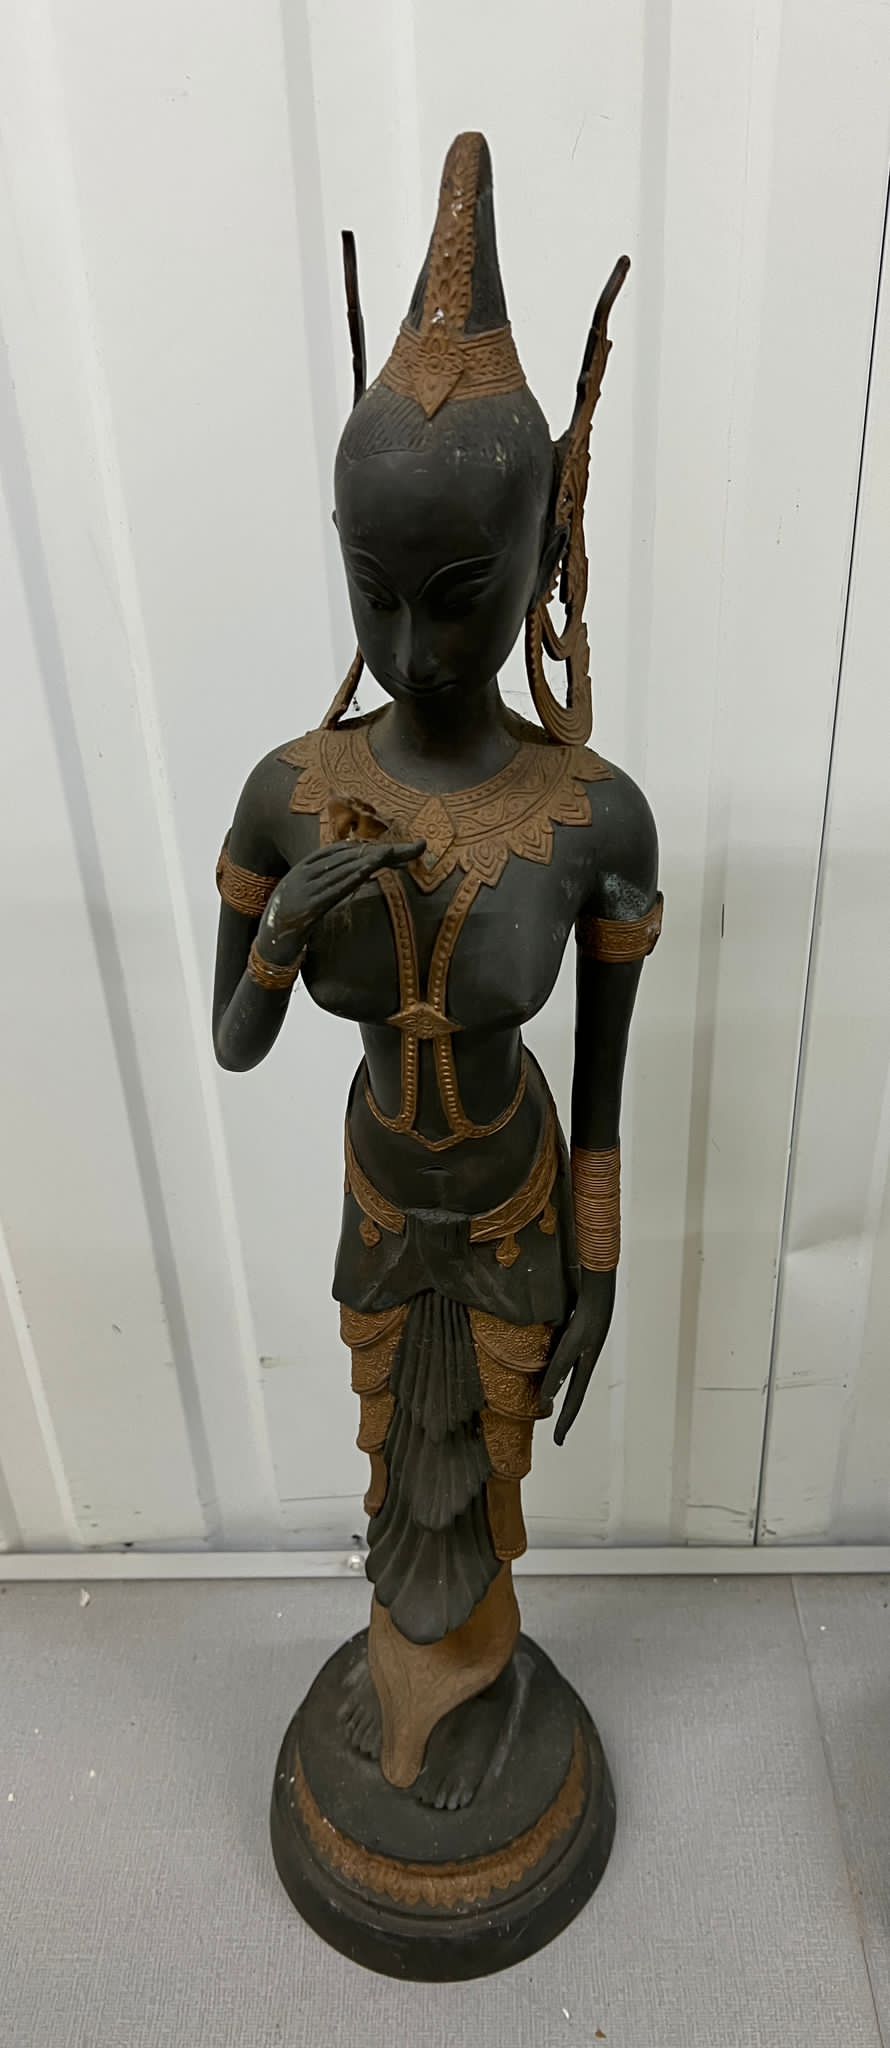 A Thai statue (Height 80cm)